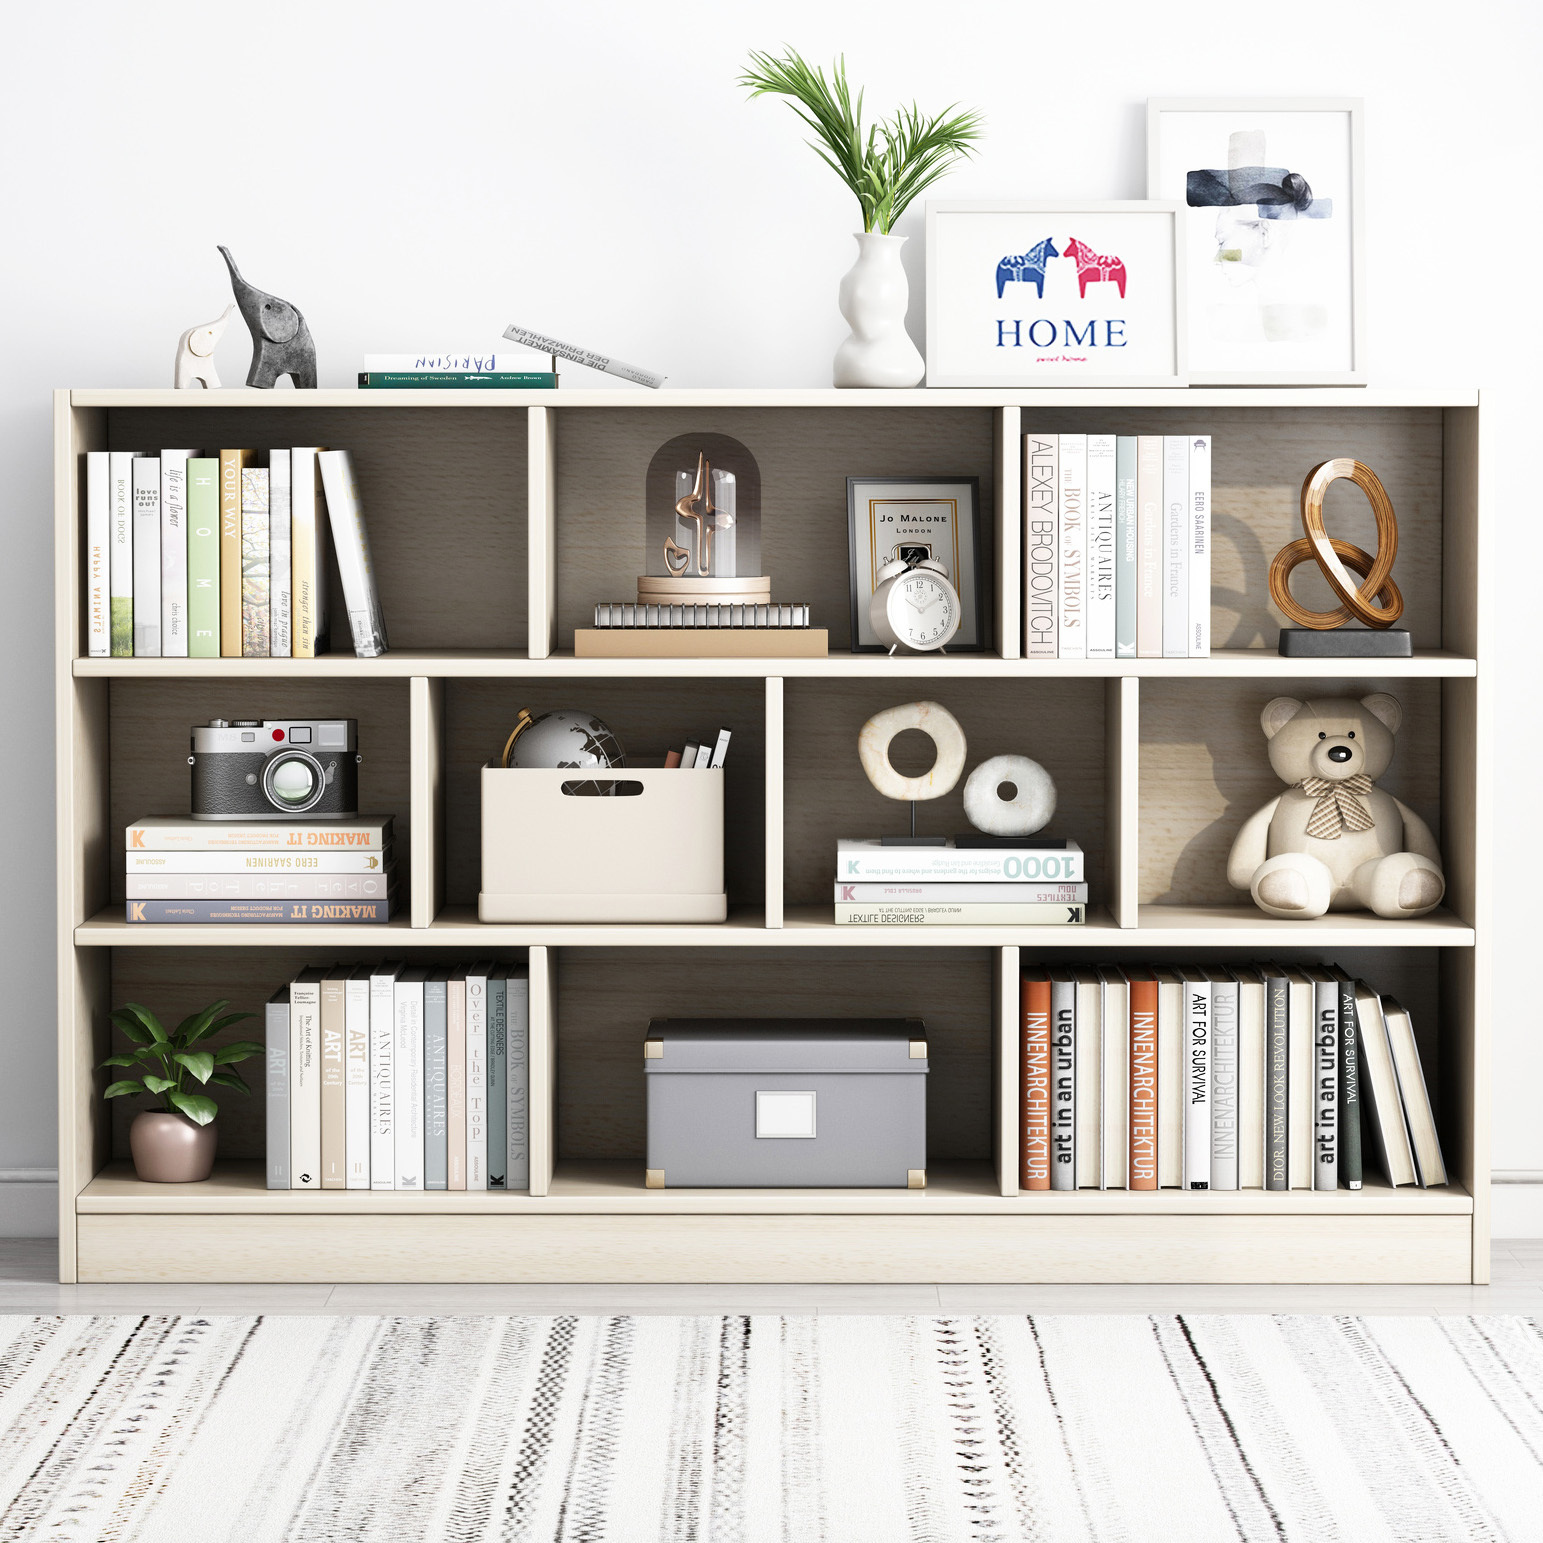 9 Shelving Insight Bookshelf Display Cabinet Bookcase Shelf Organiser (White Oak)